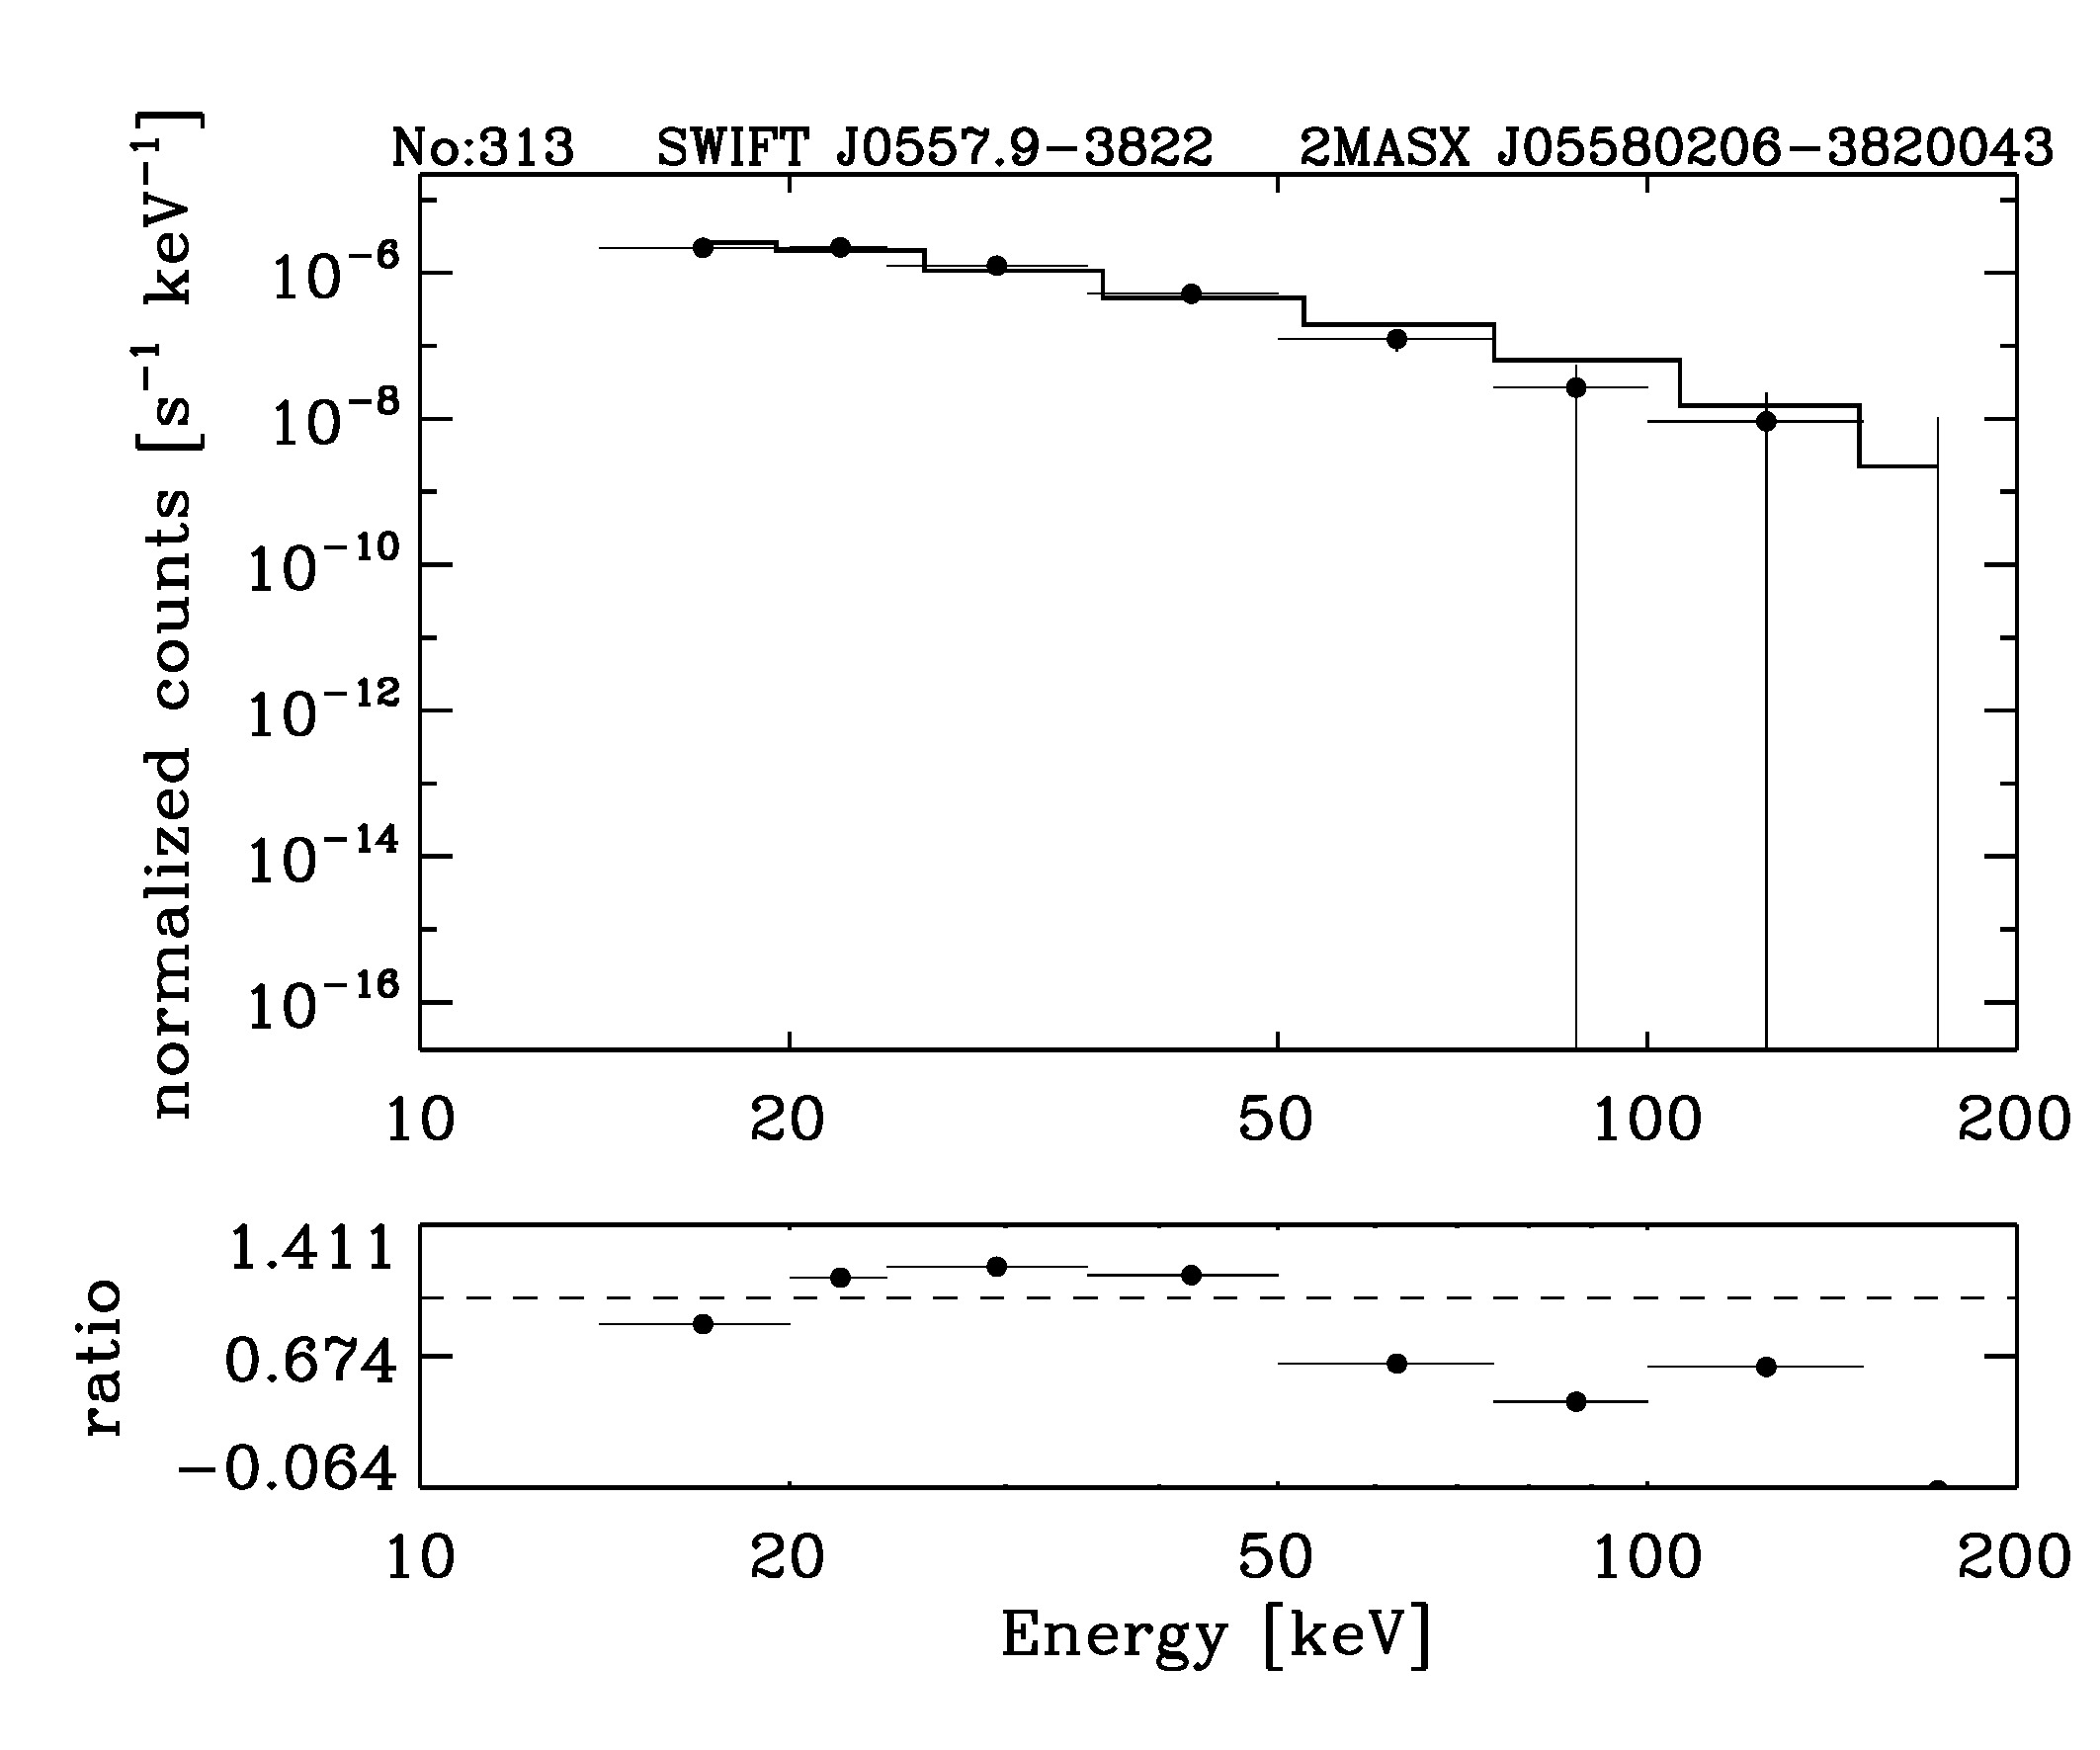 BAT Spectrum for SWIFT J0557.9-3822